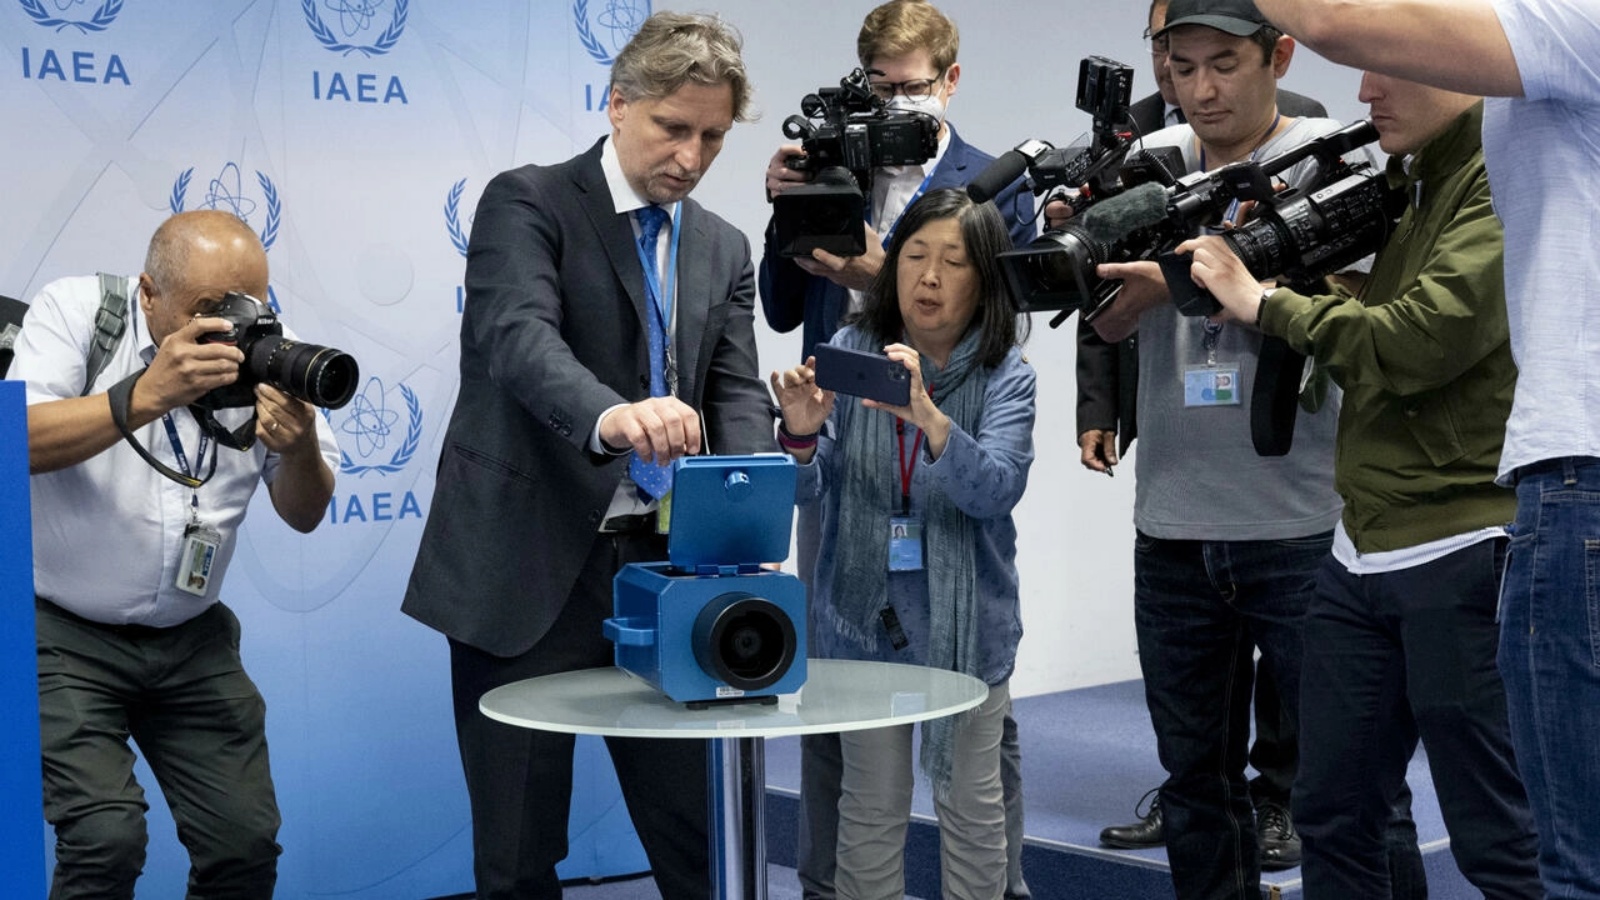 مراسلو وسائل الإعلام يشاهدون عرضاً لكاميرا المراقبة المستخدمة في إيران خلال مؤتمر صحفي لرافاييل غروسي، المدير العام للوكالة الدولية للطاقة الذرية، في يونيو 2022